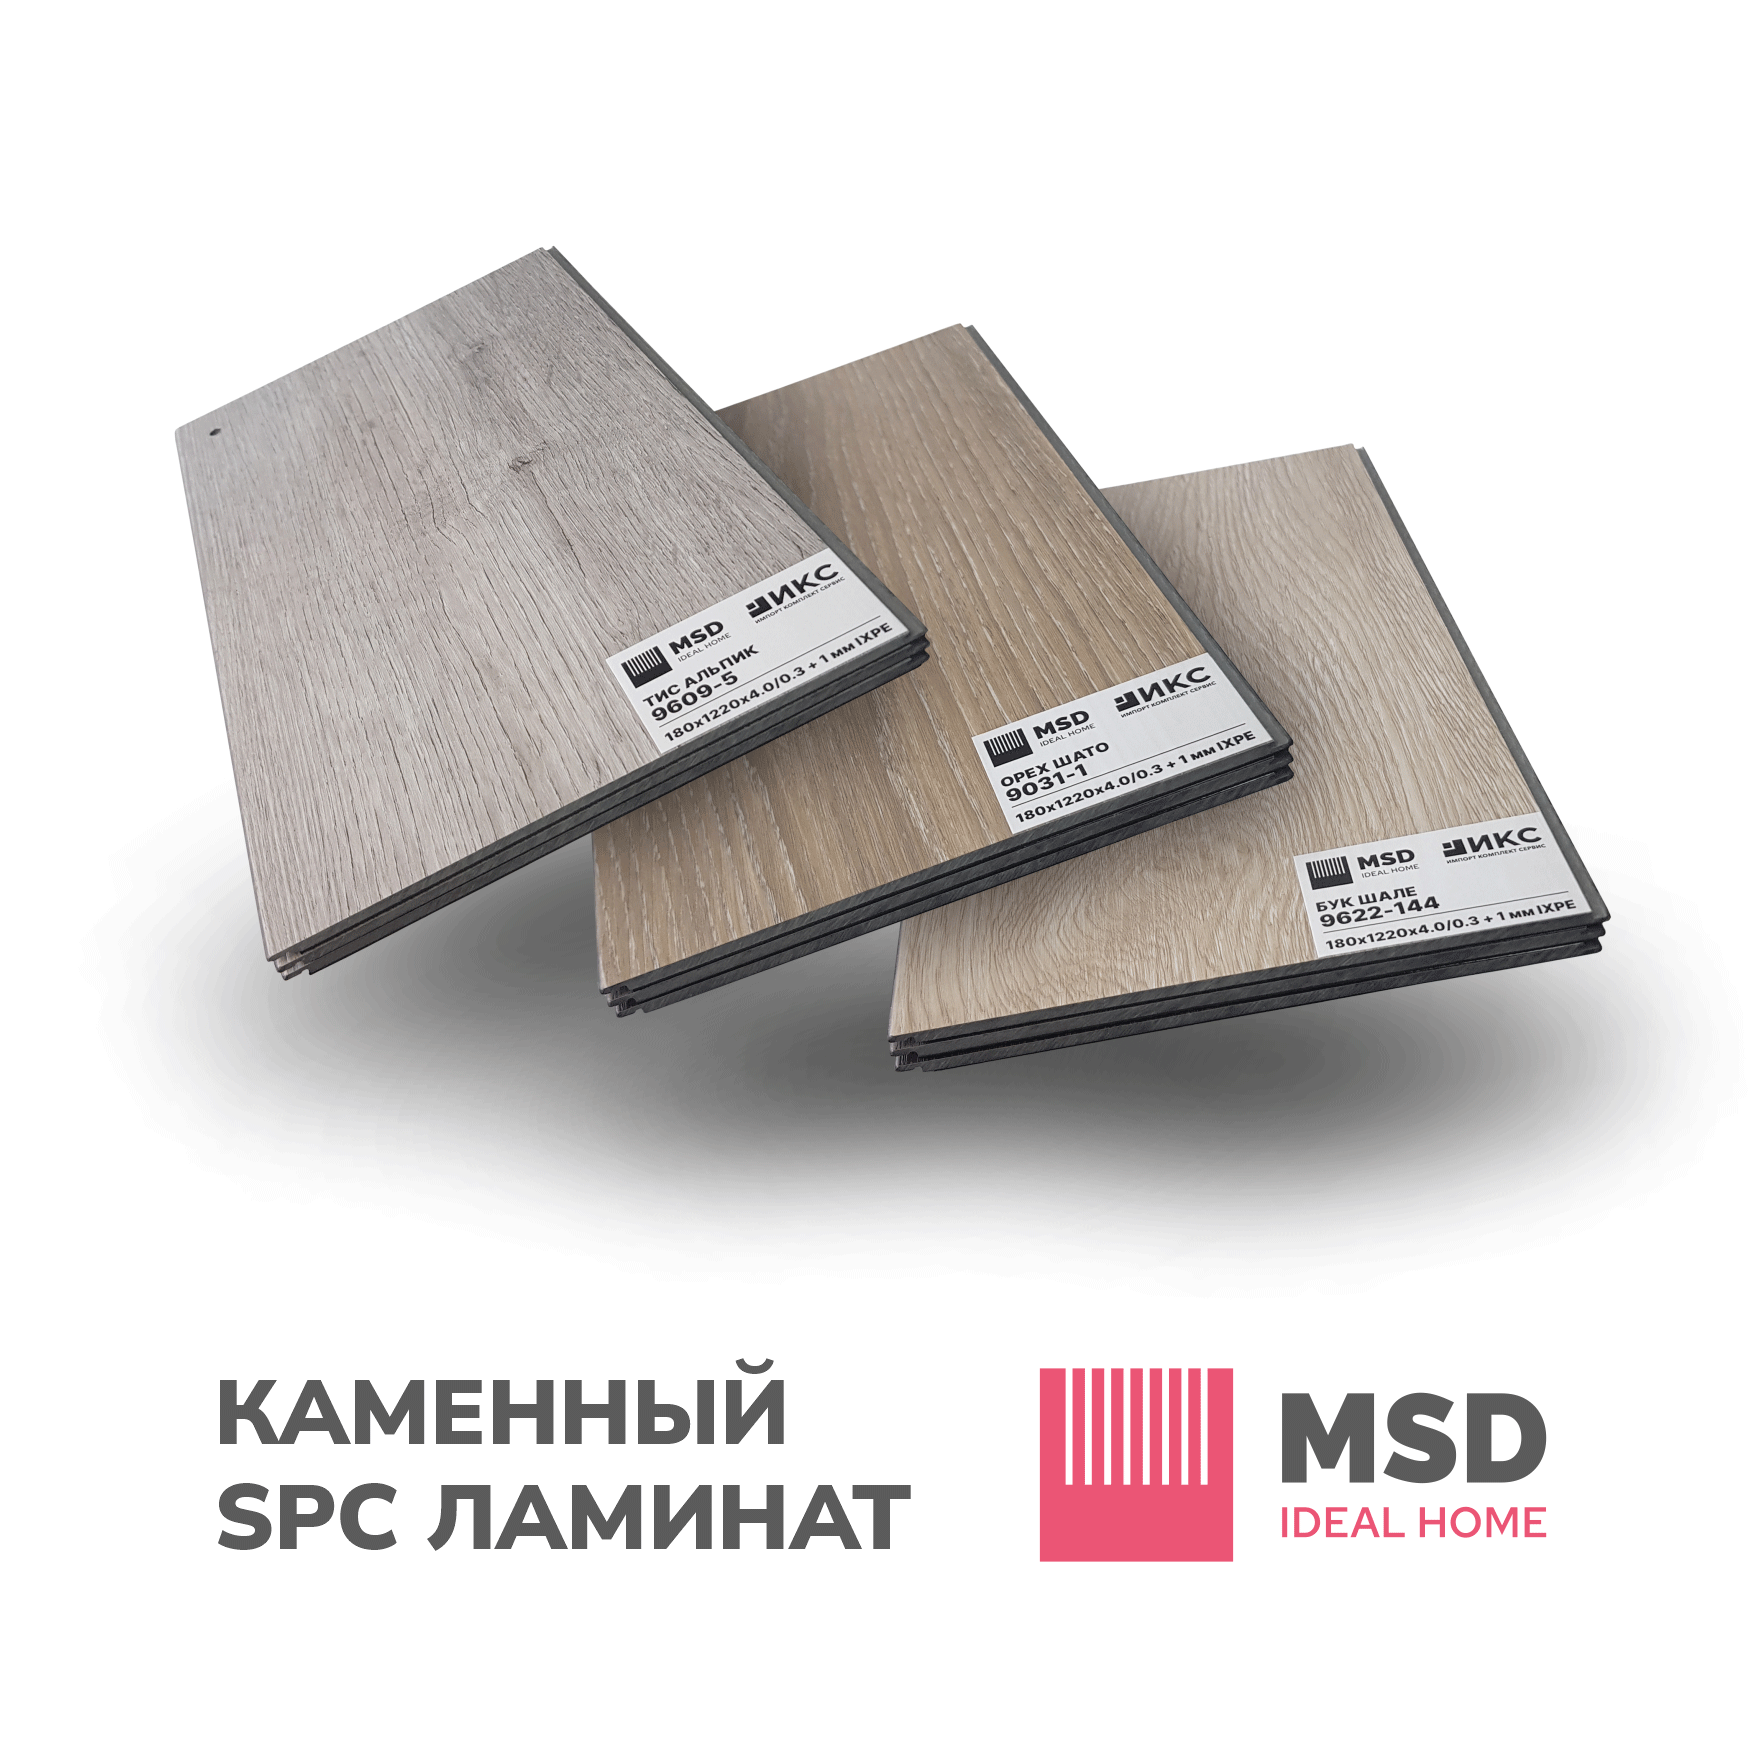 Каменный-SPC-ламинат-MSD-IDEAL-HOME